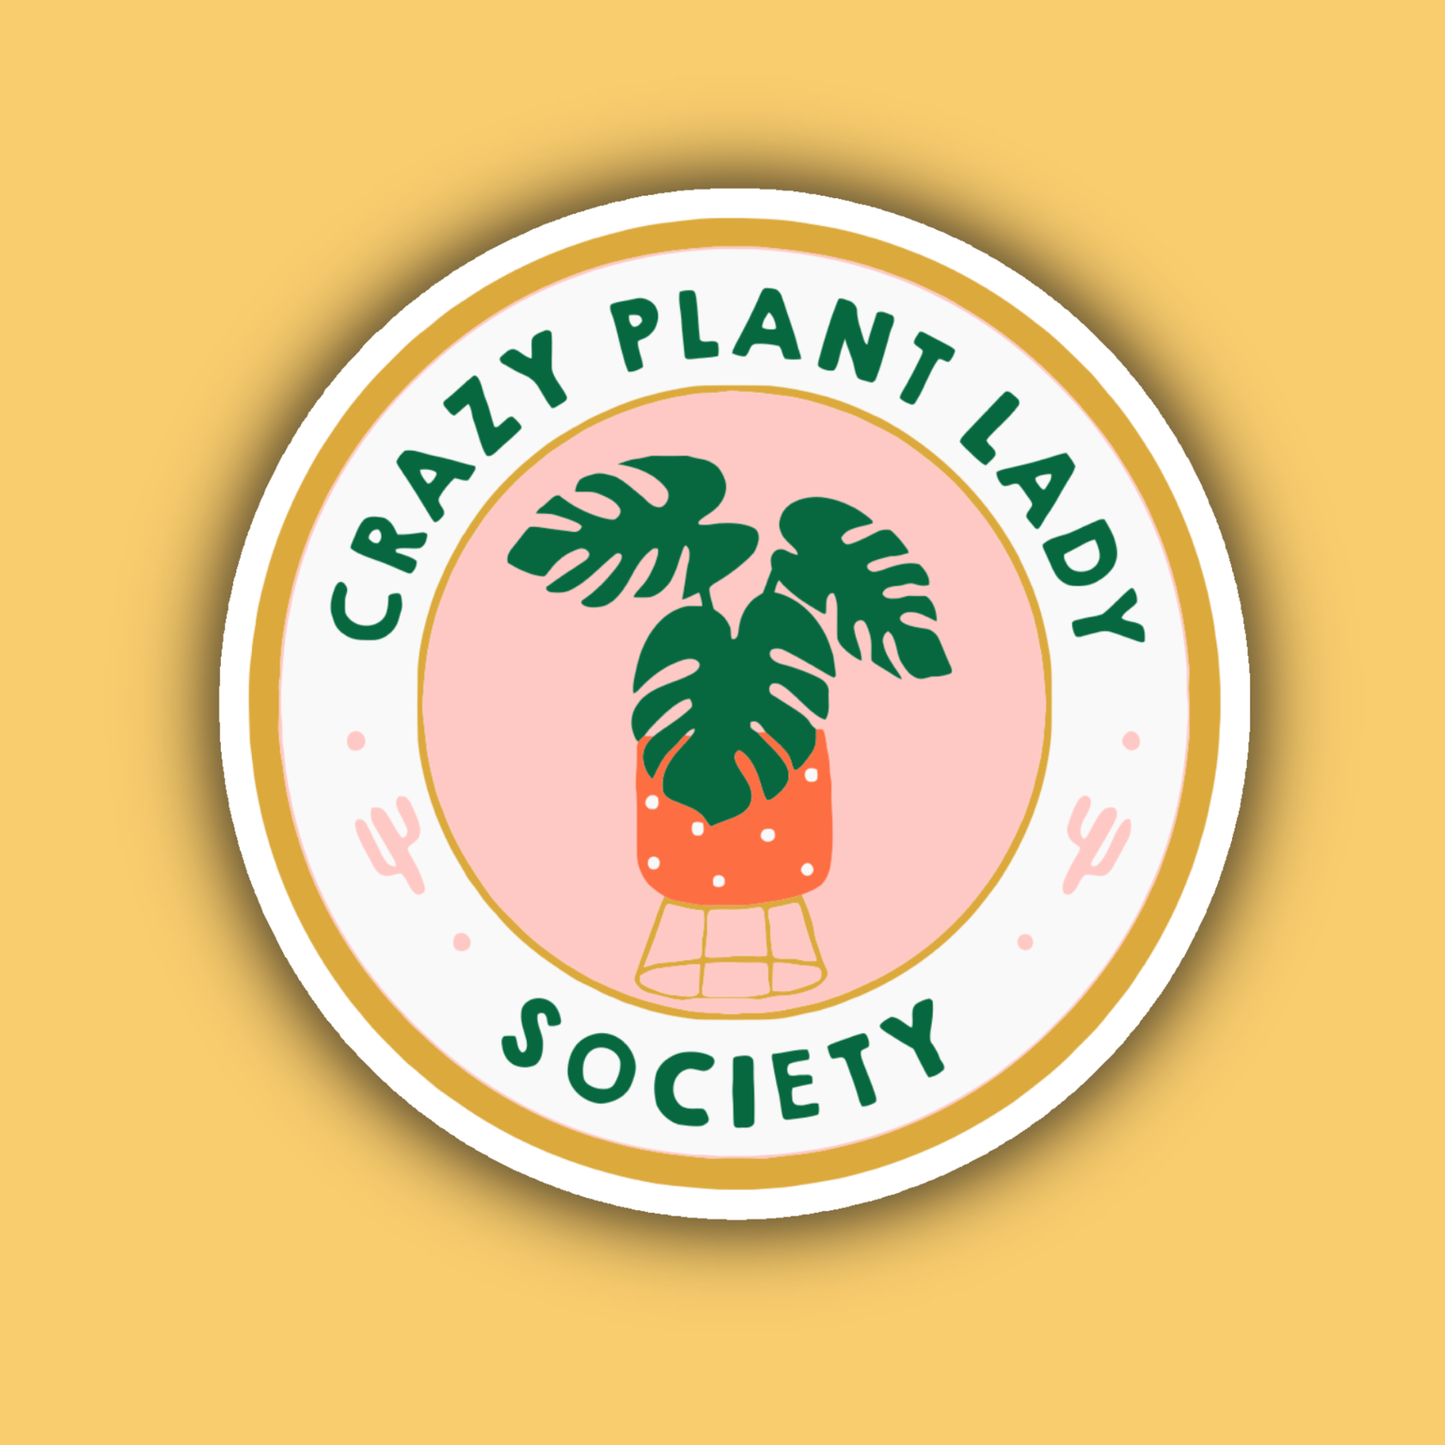 Crazy Plant Lady Society Gardener Plant Lover Sticker